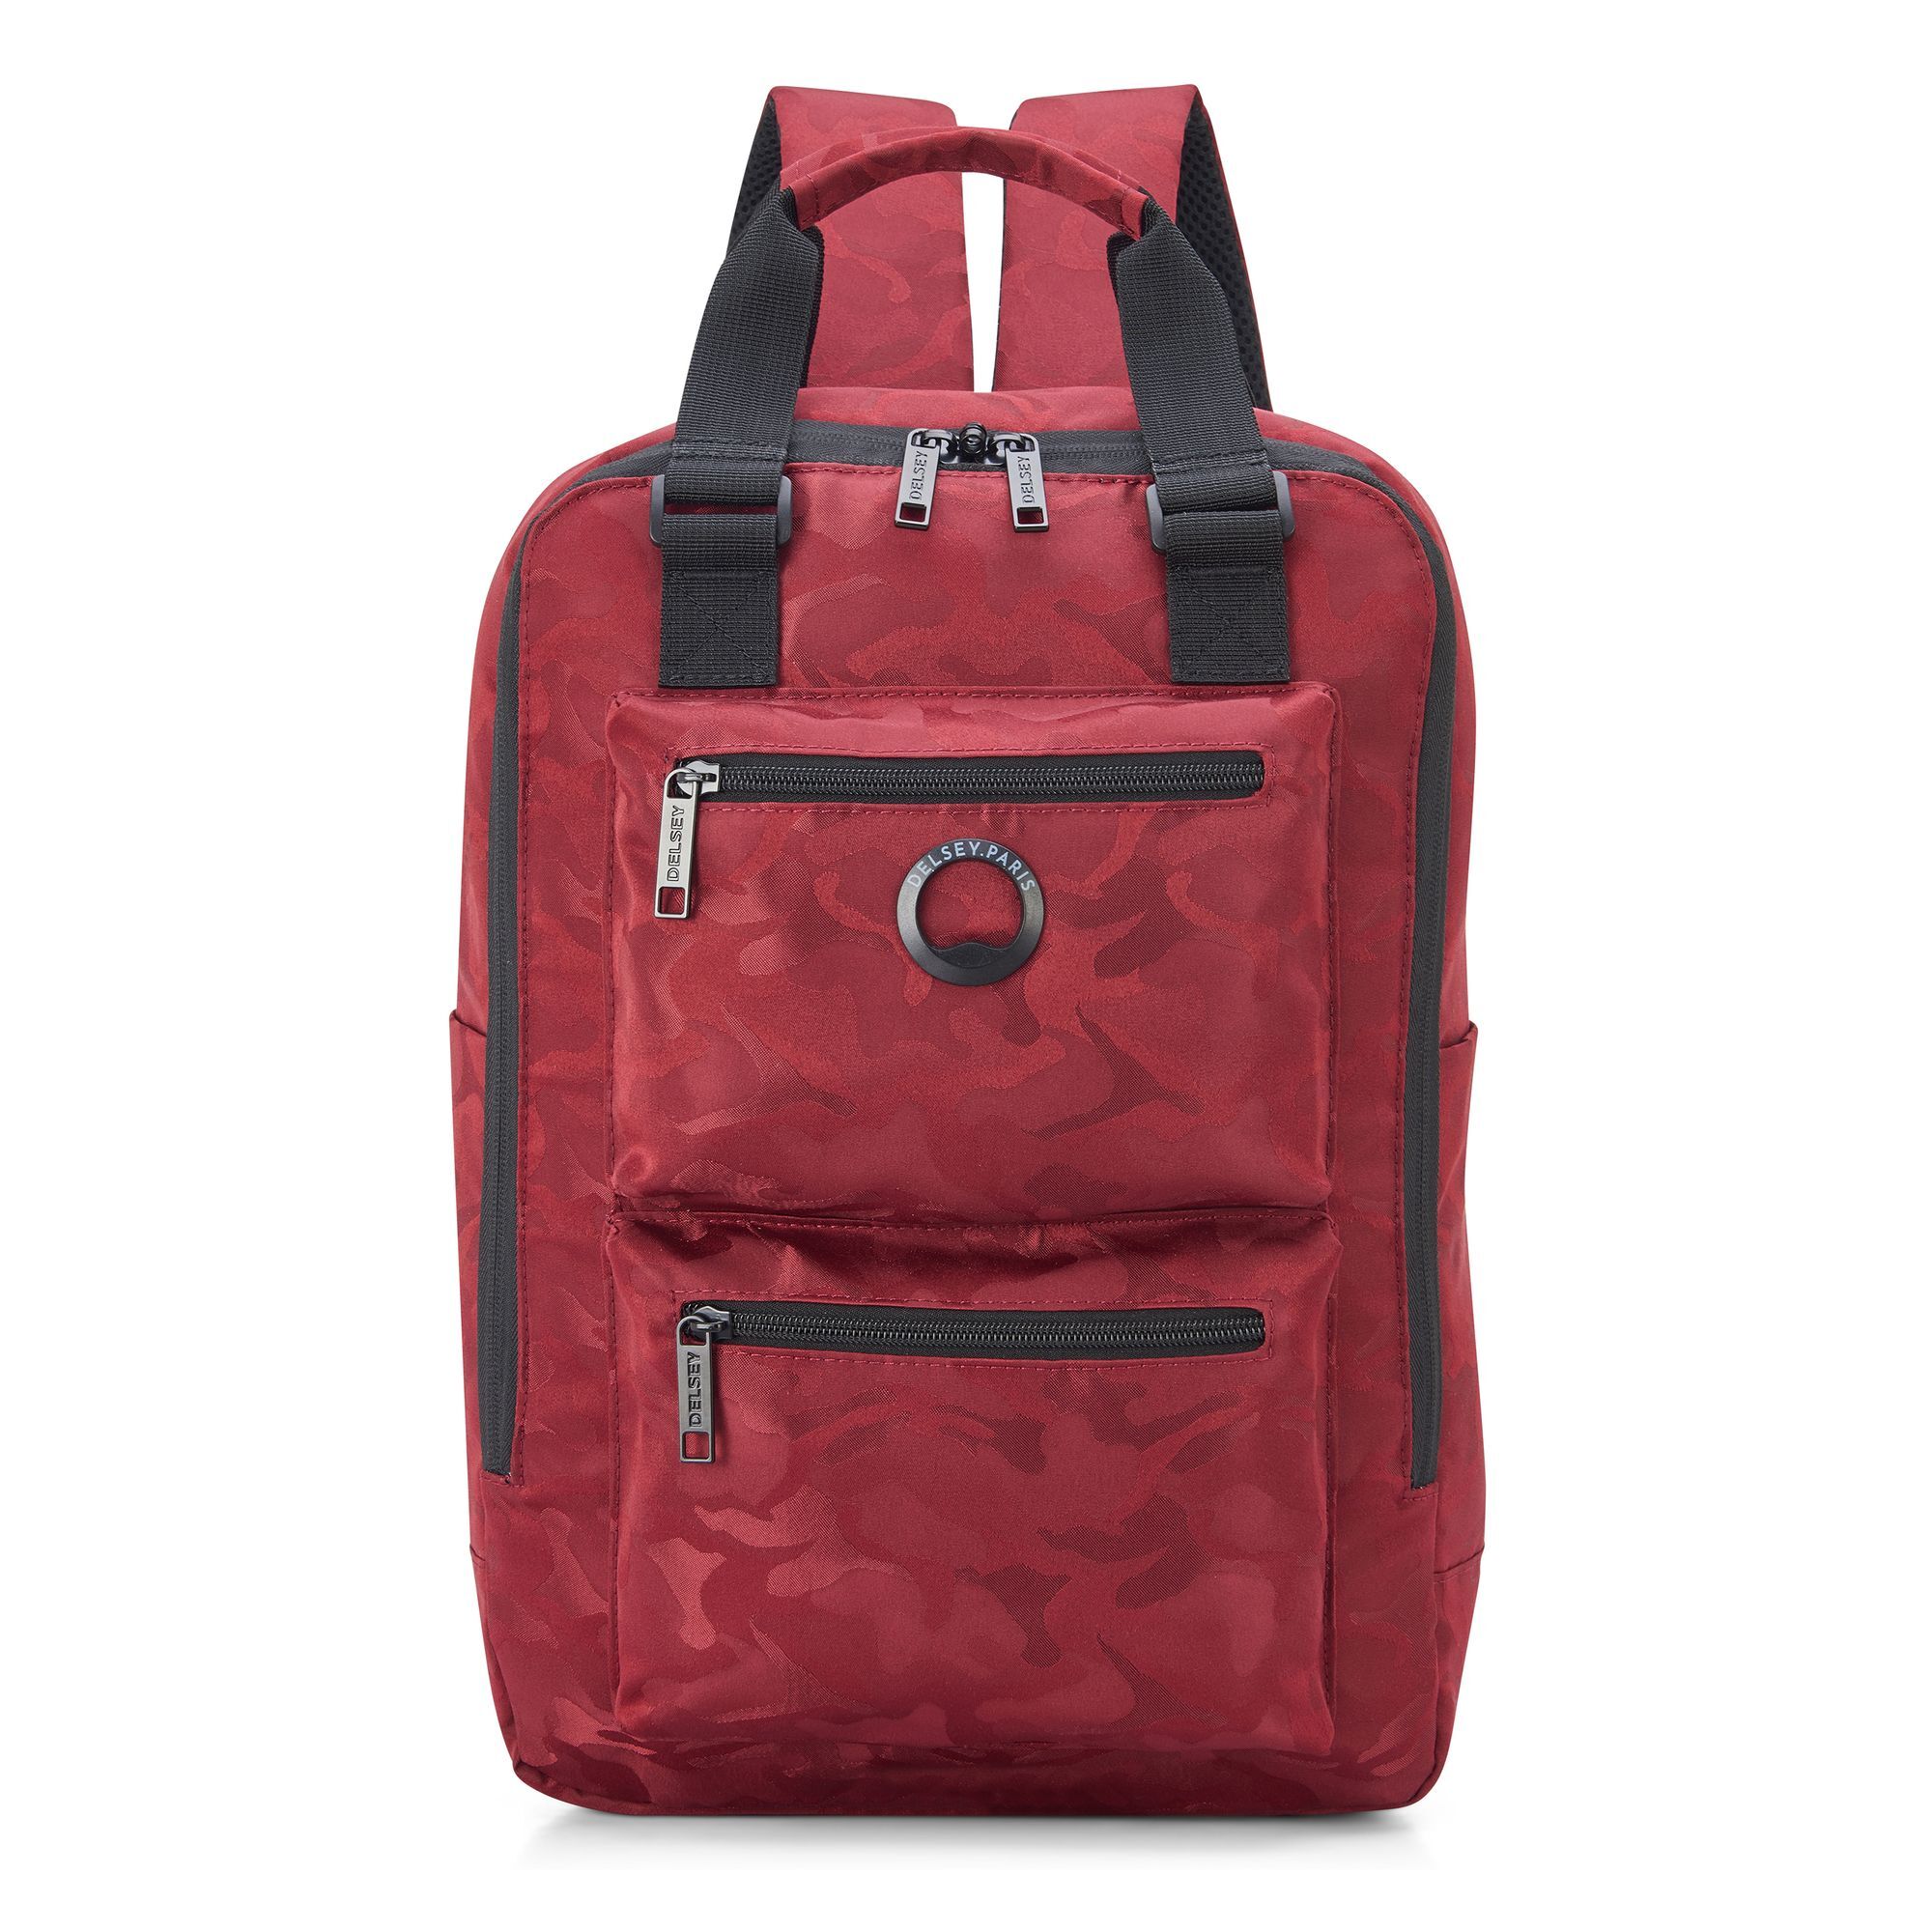 Рюкзак Delsey Citypak 42 cm Laptopfach, цвет rouge camouflage